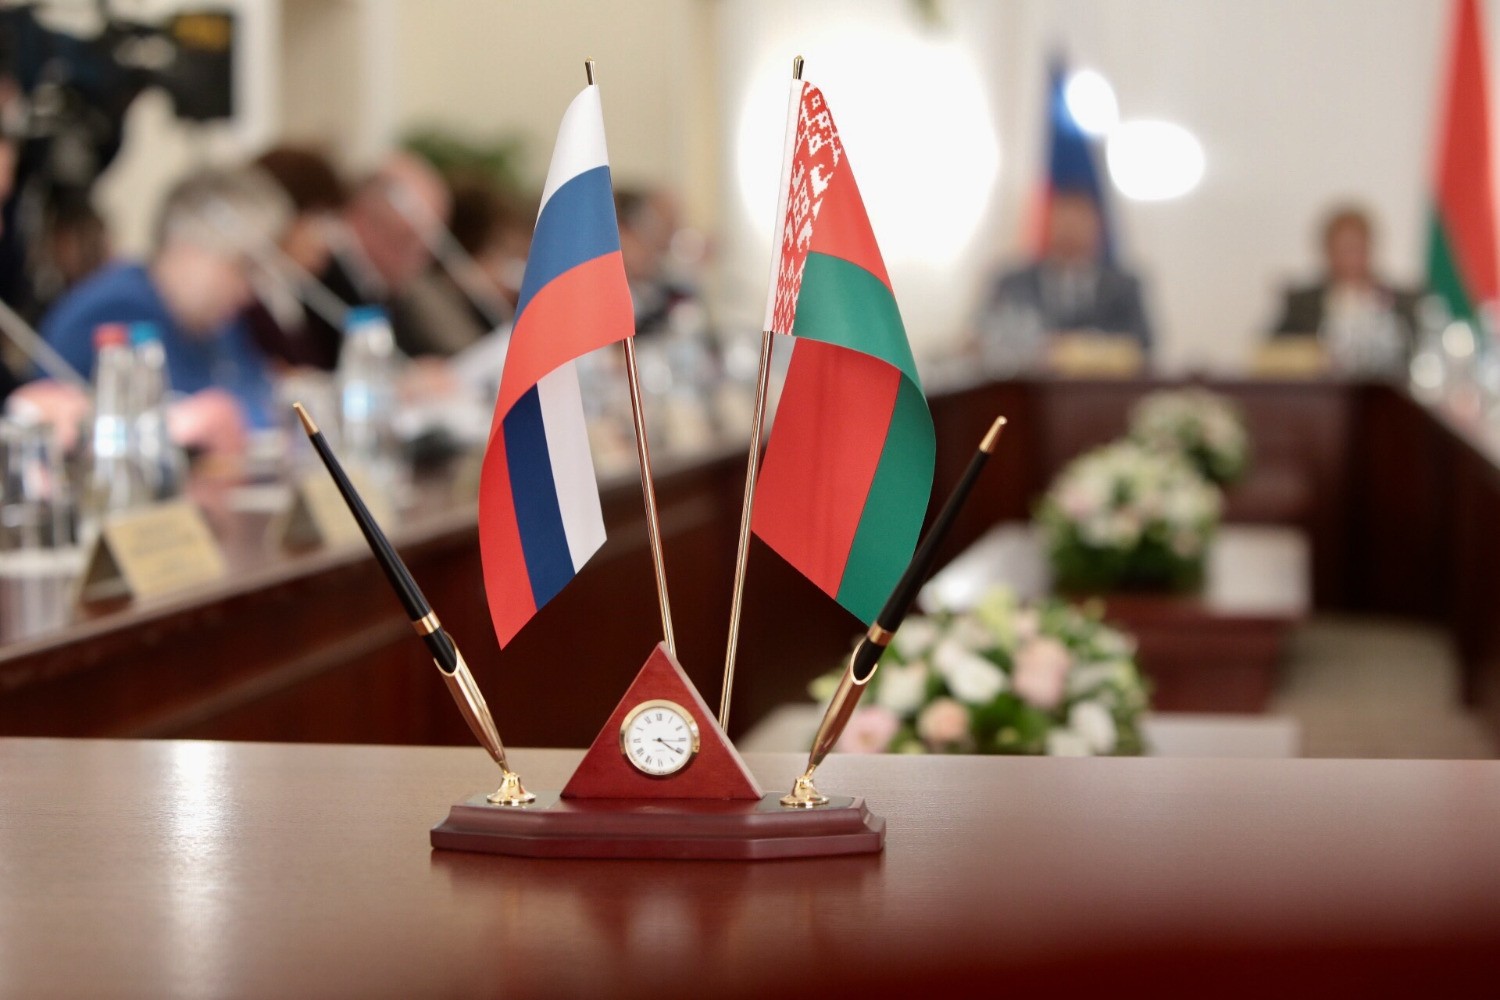 Флаги беларуси и россии вместе фото